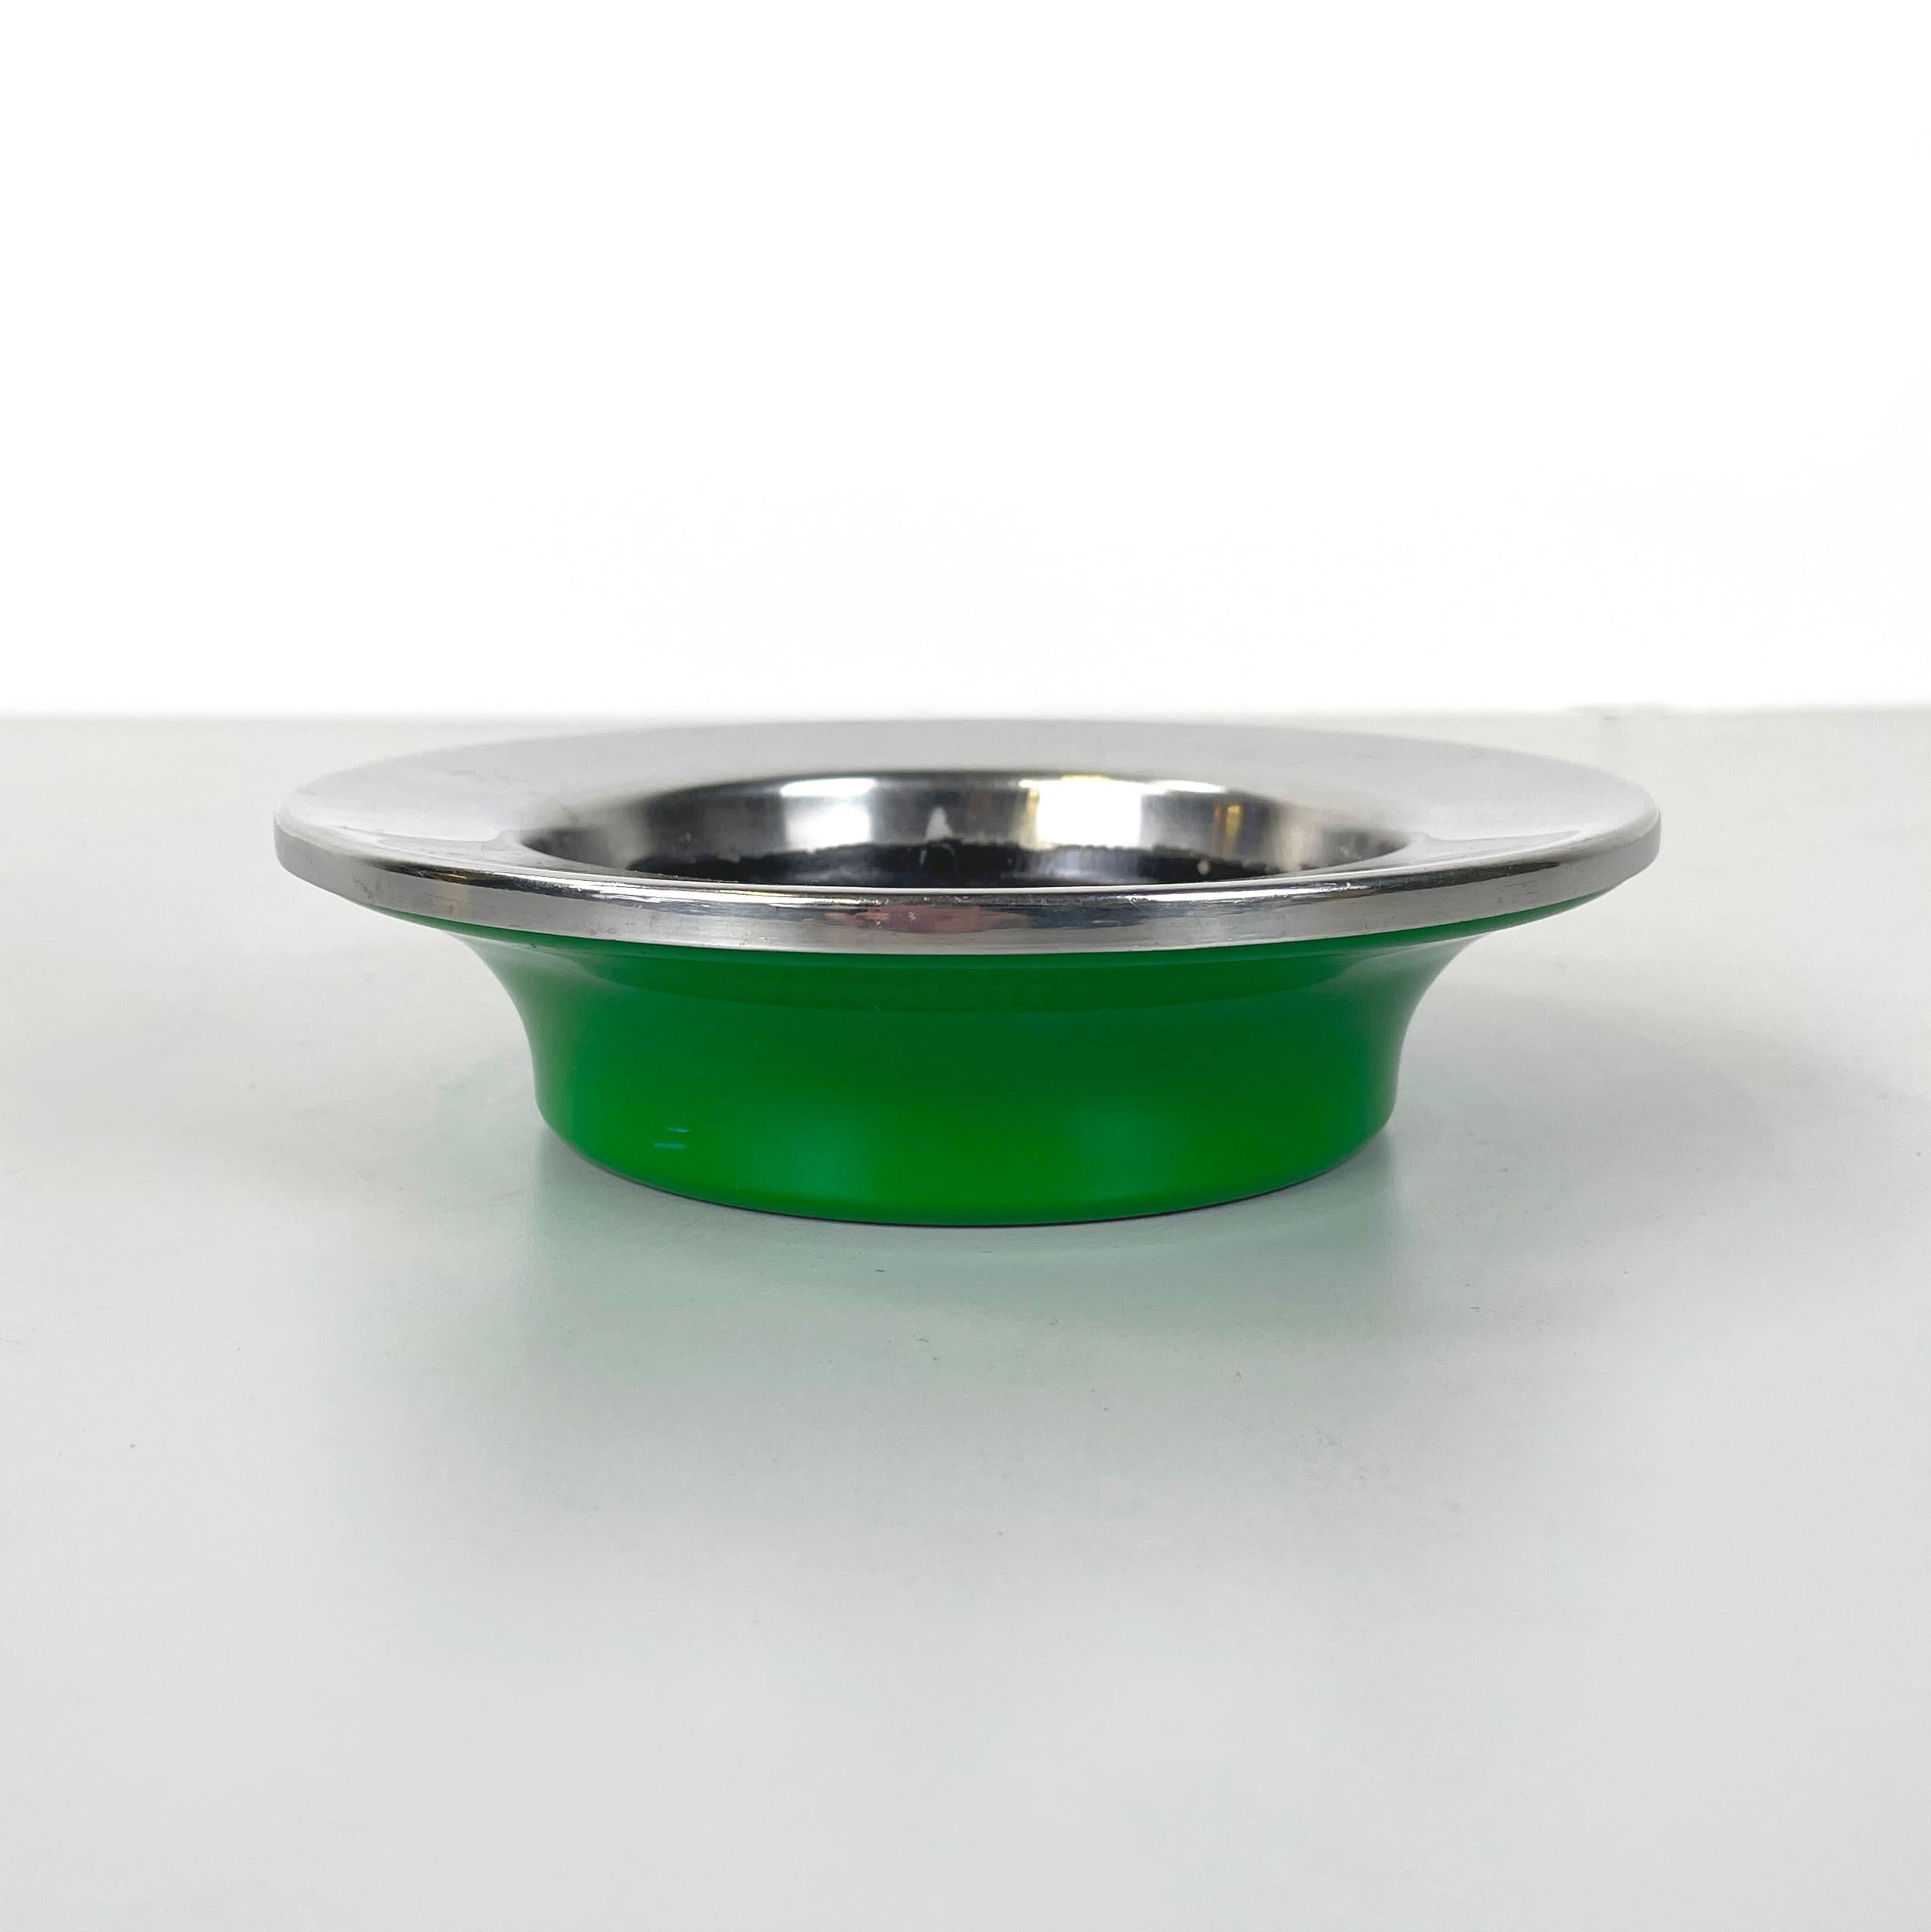 Cendrier moderne italien en plastique vert et métal par Gino Colombini pour Kartell, années 1970
Cendrier rond avec plaque métallique peinte en noir et profilé en métal chromé en porte-à-faux. Base ronde en plastique vert brillant. Il peut être